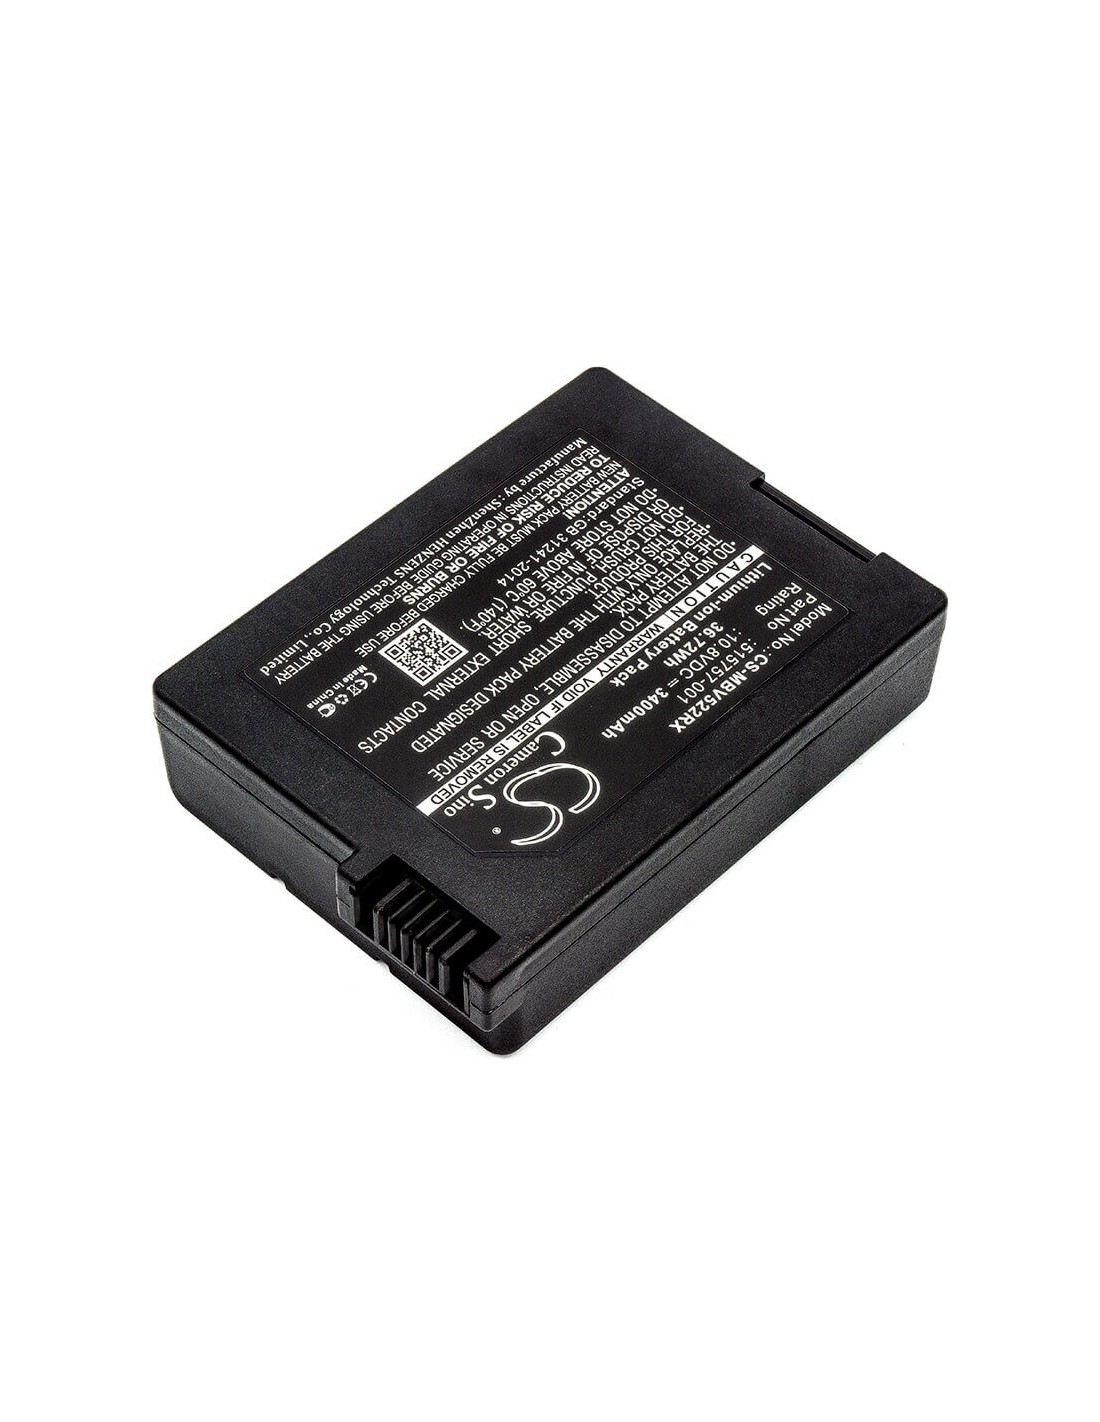 Battery for Motorola, Sbv5220, Sbv5221, Surfboard Digital Voice Modem Sb5220 10.8V, 3400mAh - 36.72Wh